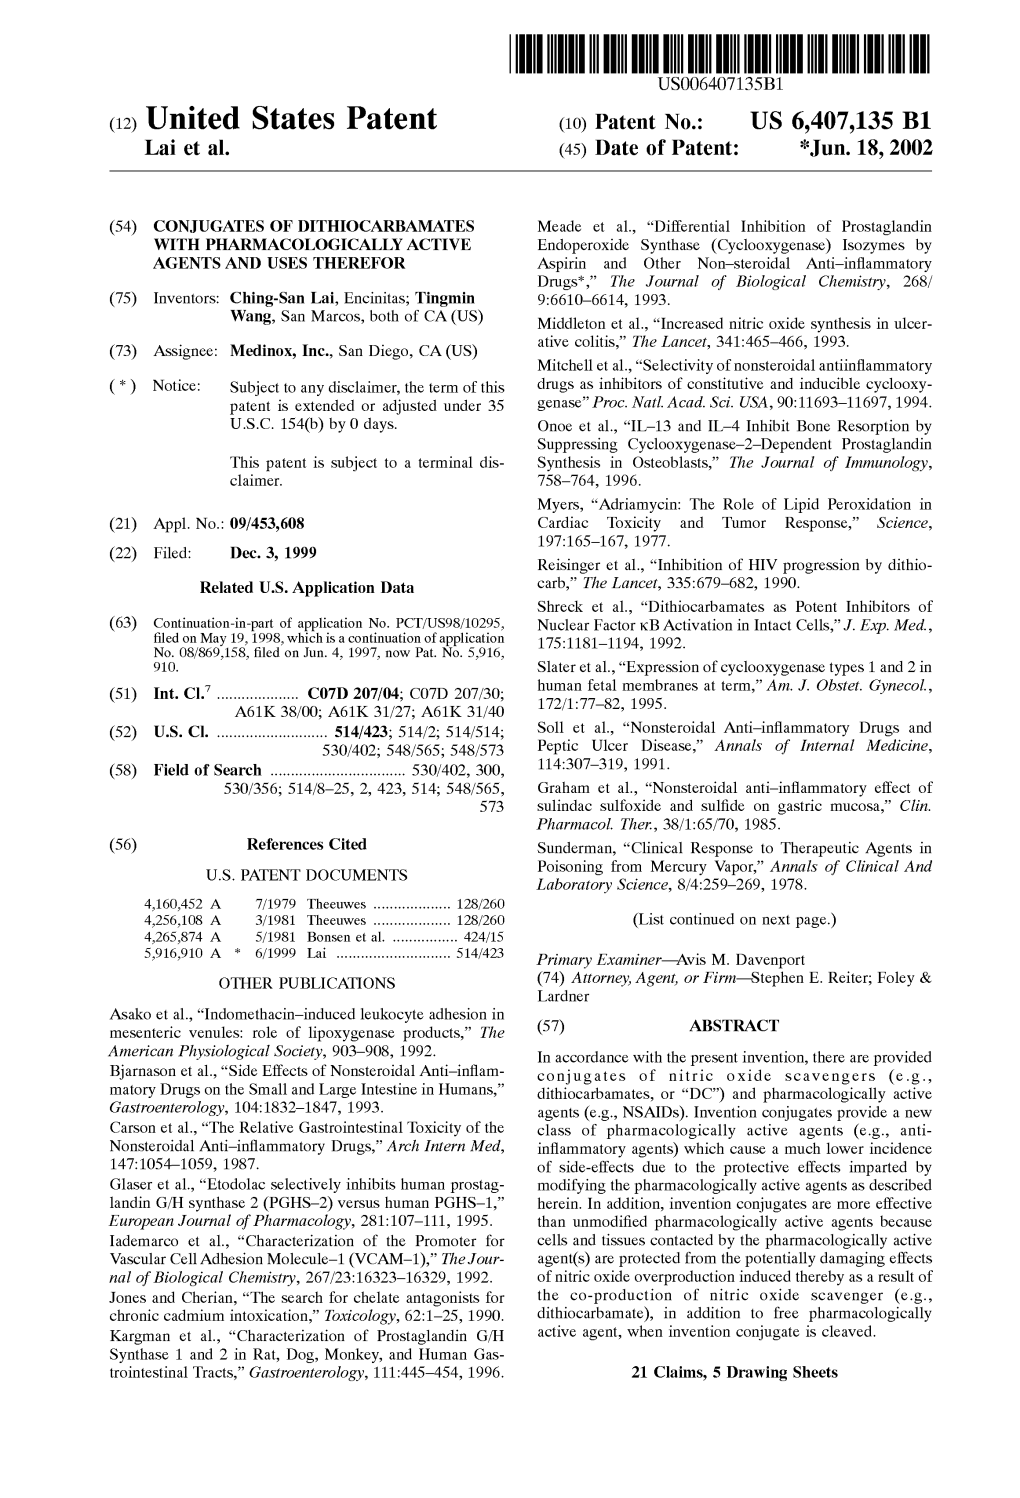 (12) United States Patent (10) Patent No.: US 6,407,135 B1 Lai Et Al